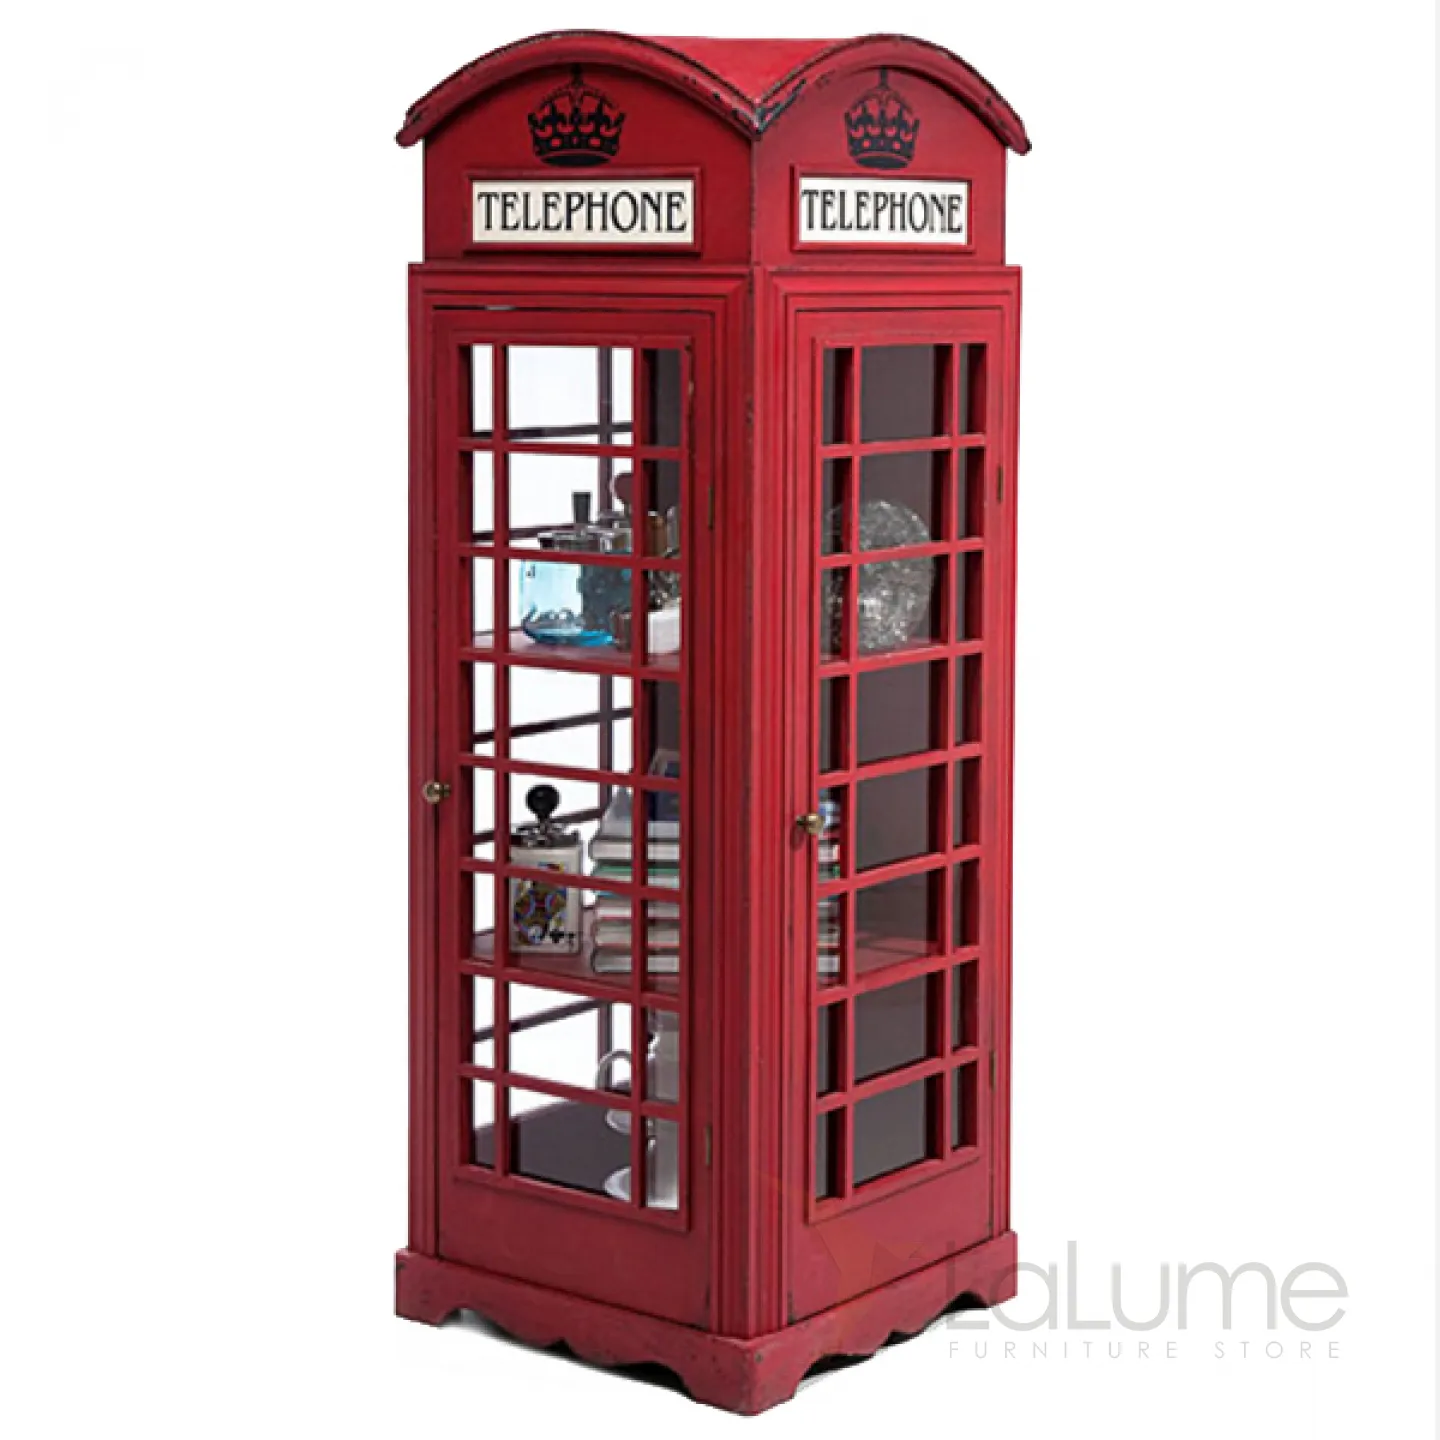 Британия телефон. Шкаф телефонная будка Лондон. Красная телефонная будка в Лондоне. Шкаф будка Лондон. Шкаф будка Лондон шкаф.